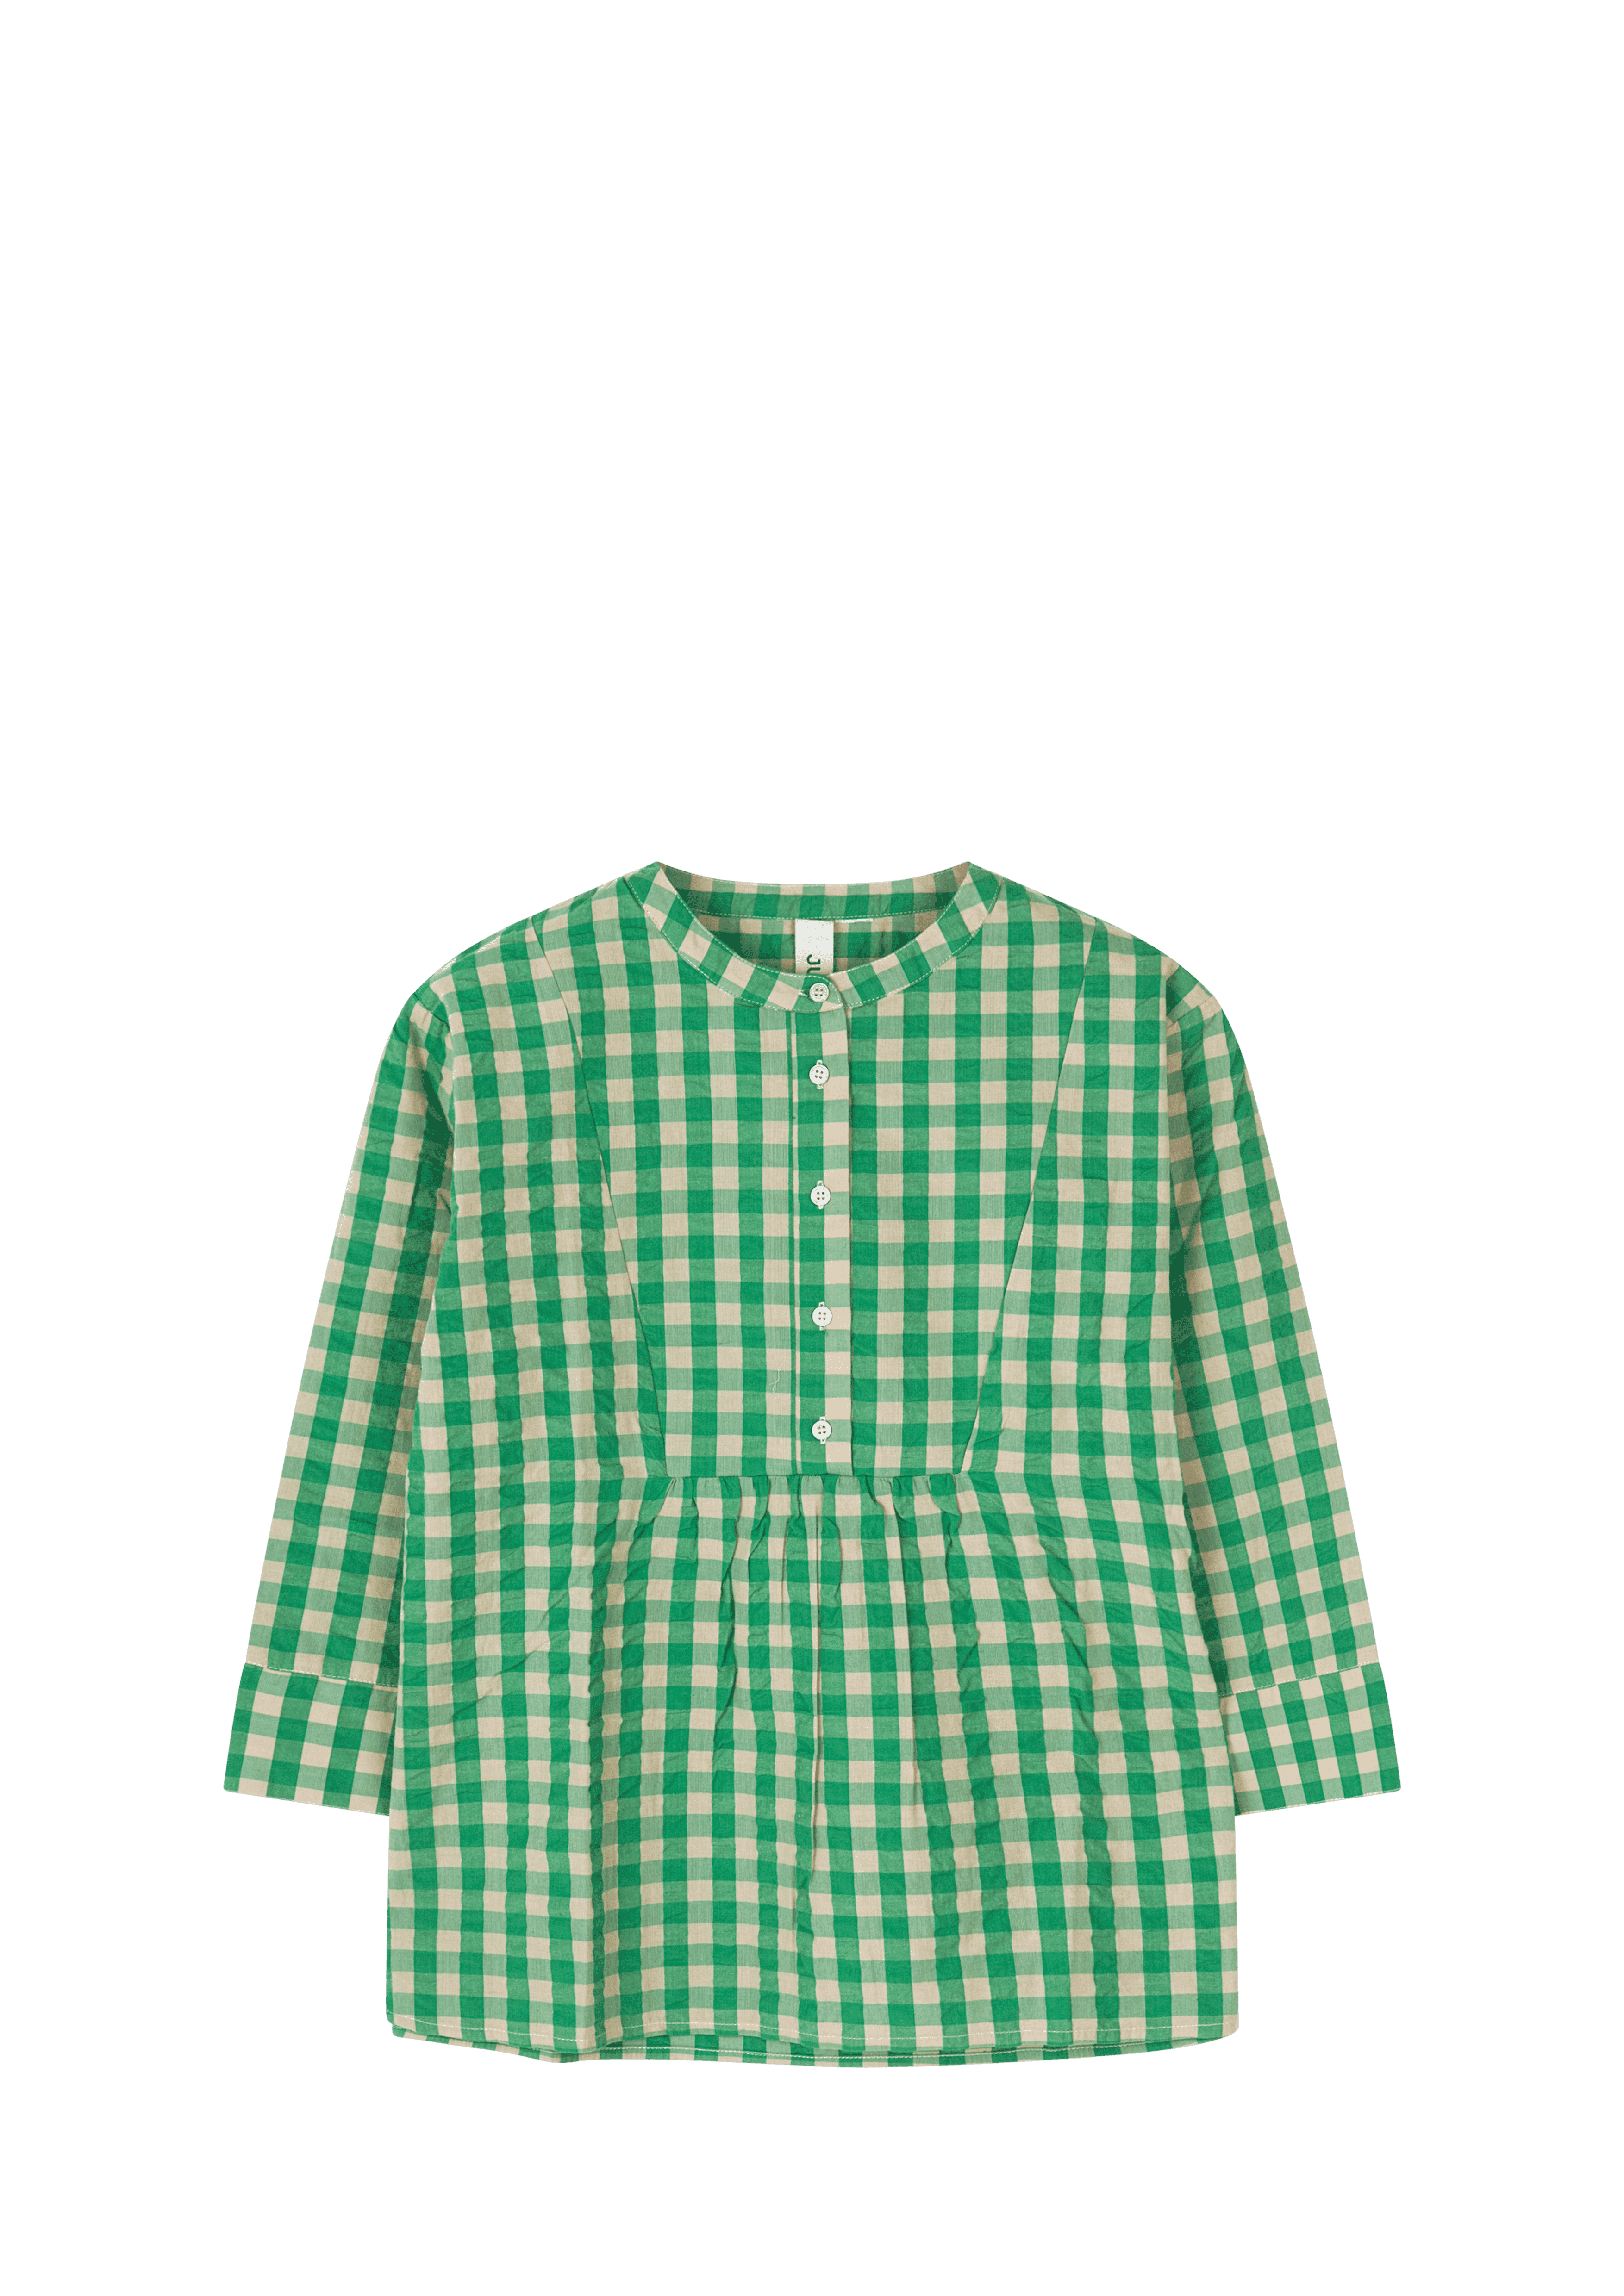 Irene shirt S/M